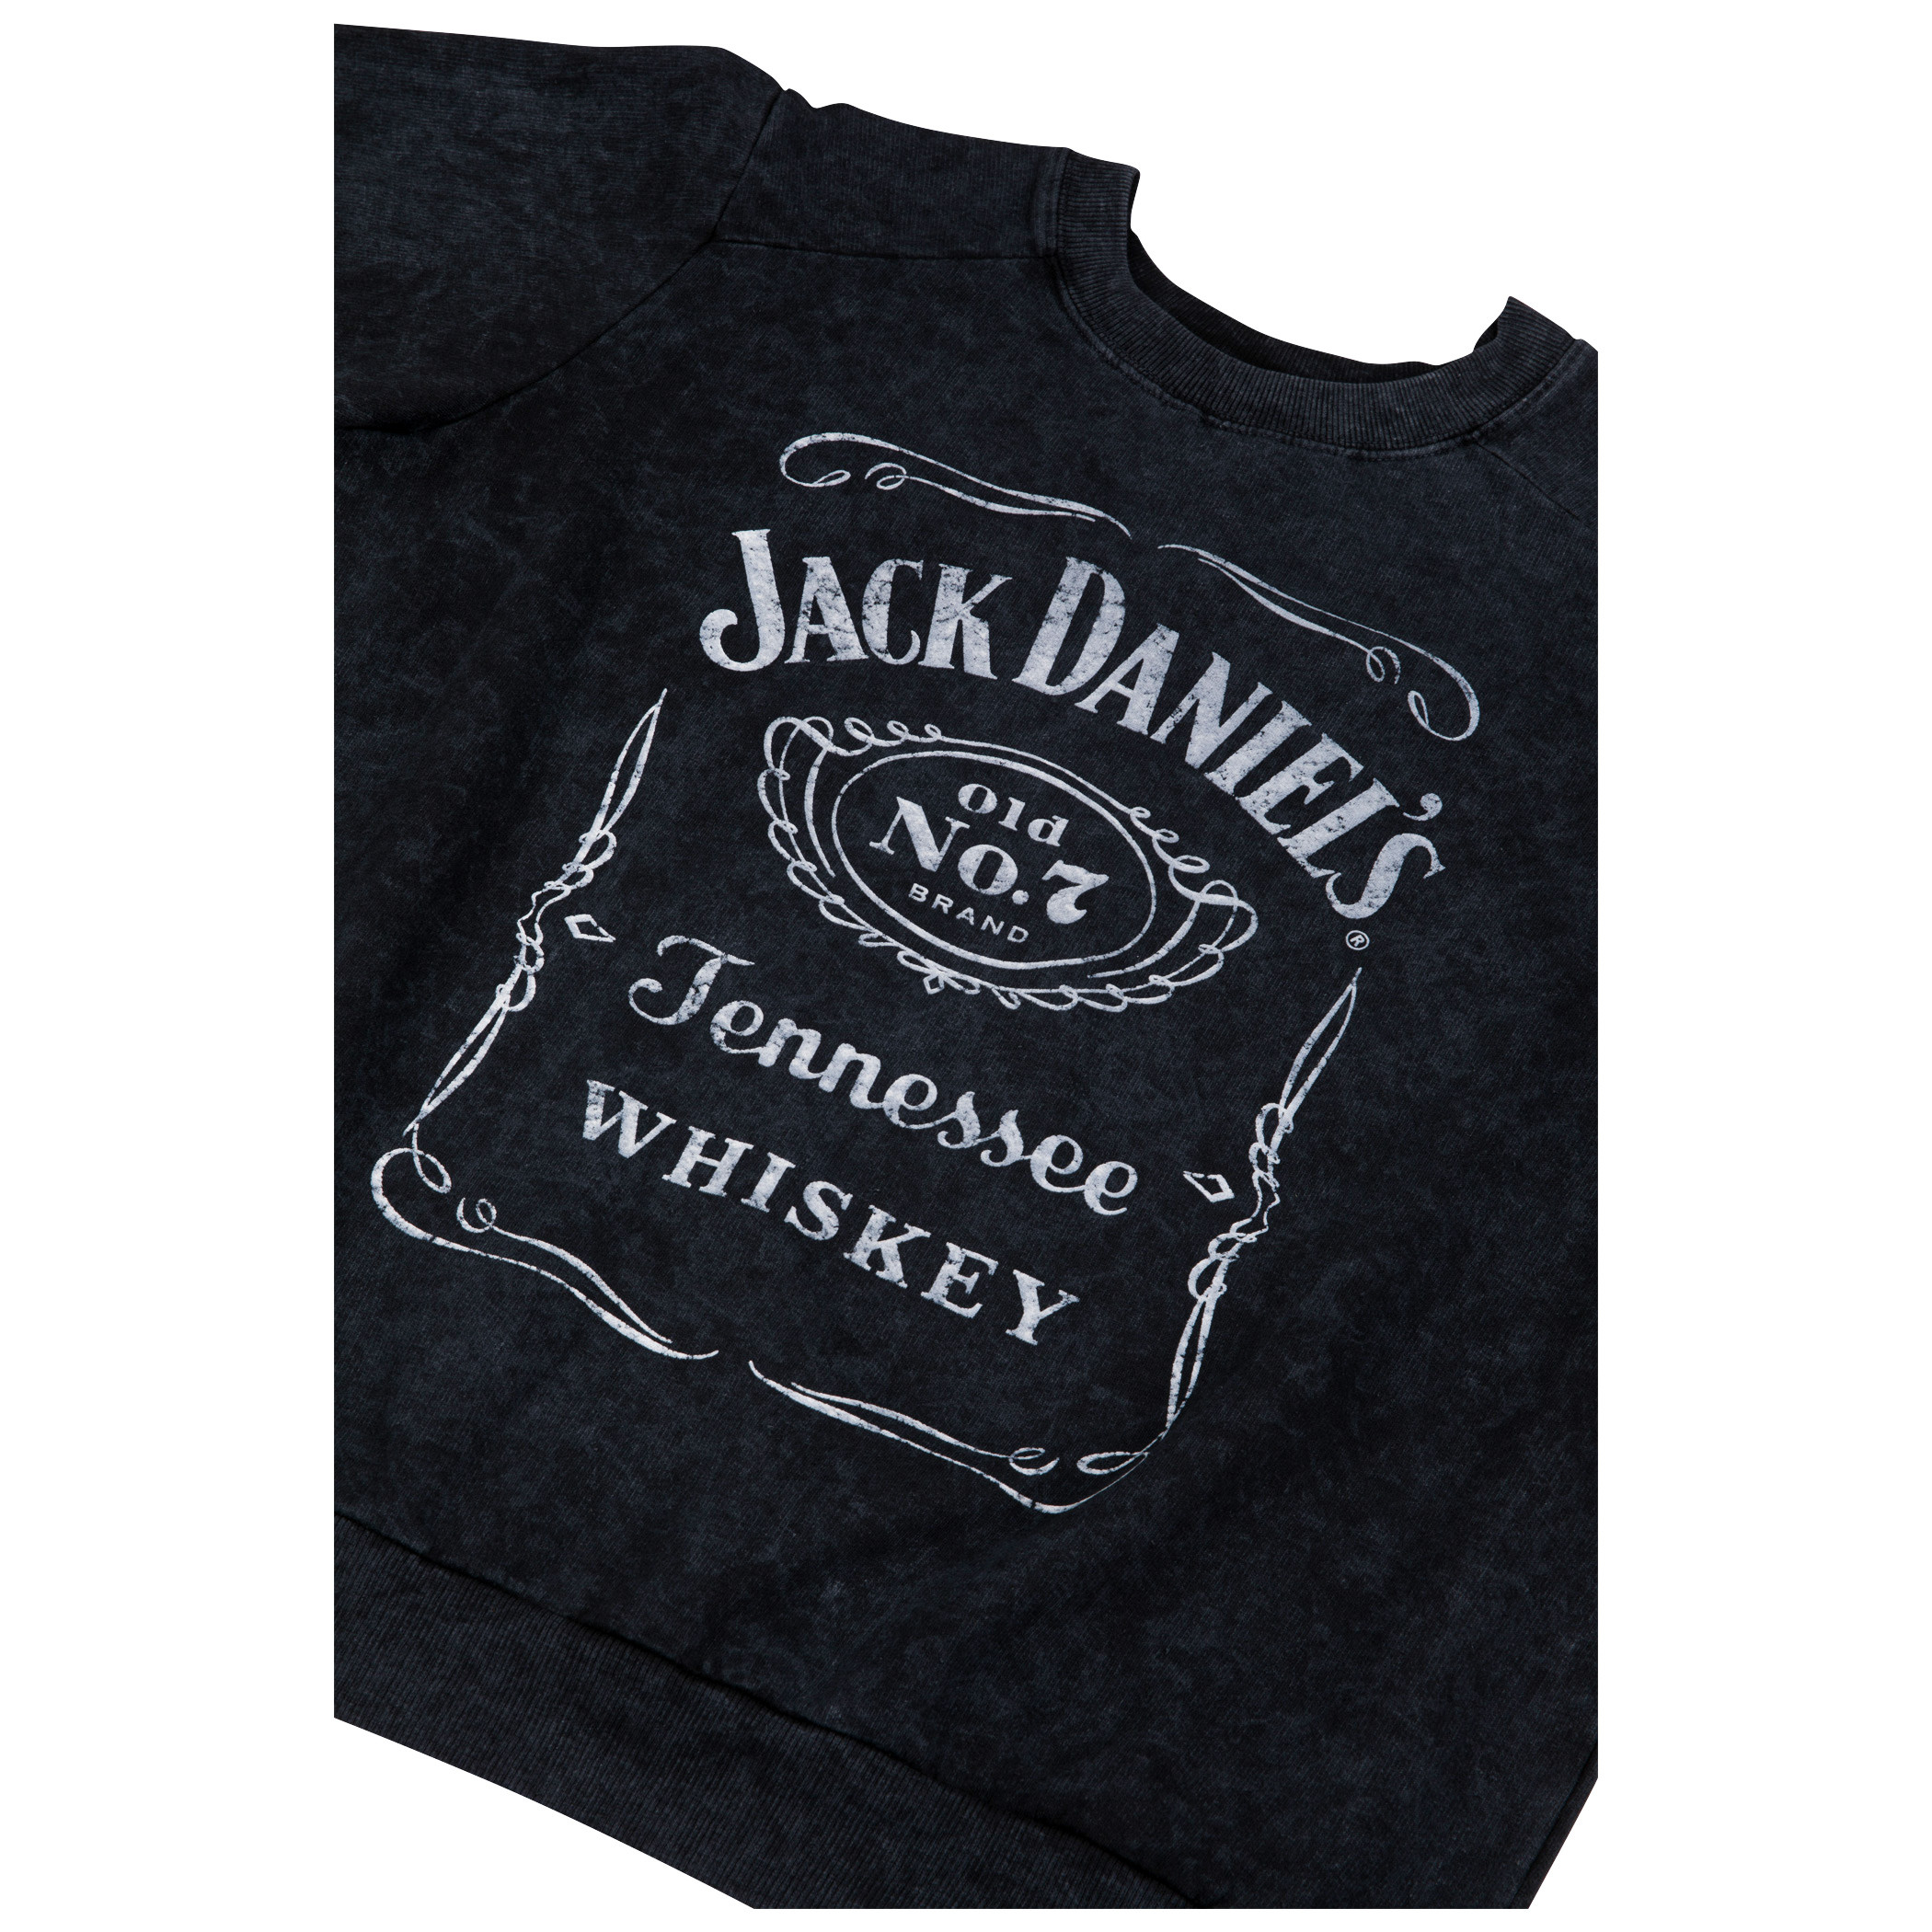 Jack Daniel's Label Women's Mineral Wash Crew Neck Fleece Sweatshirt